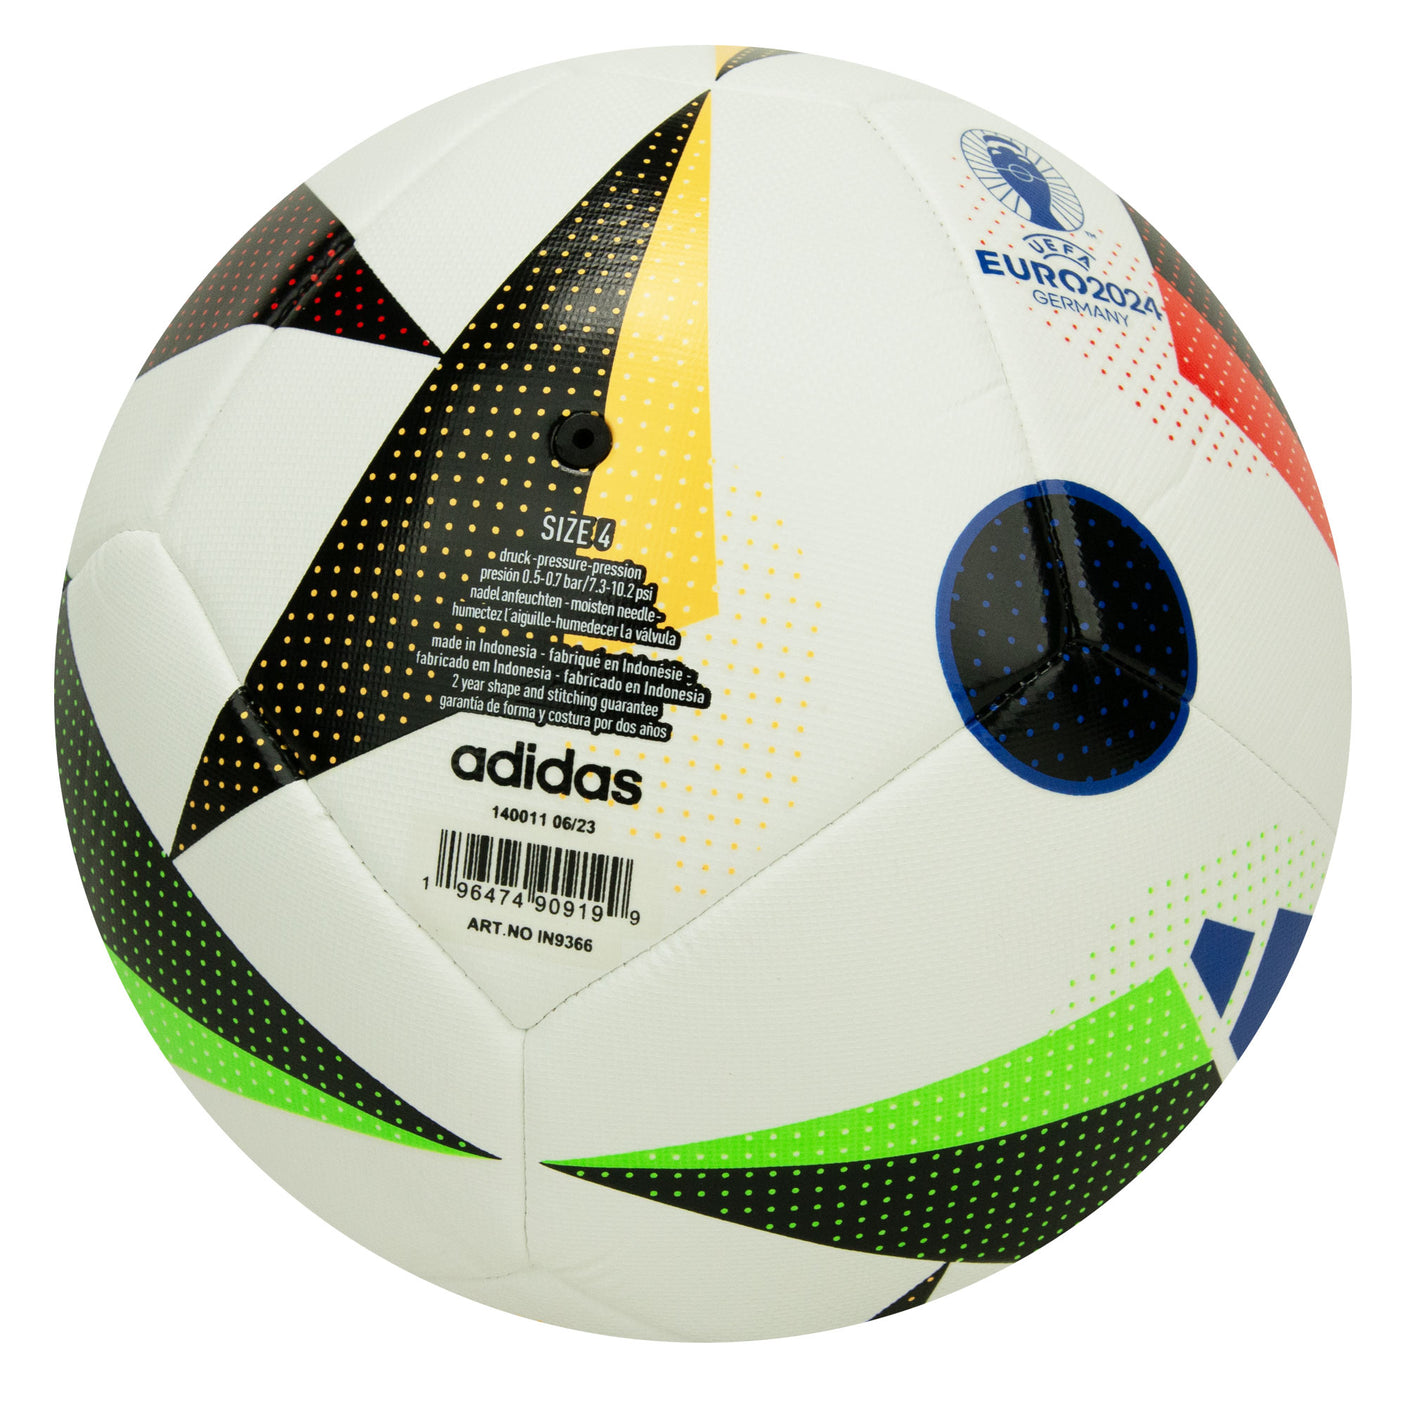 adidas UEFA Euro 2024 Training Ball White/Black/Blue Back